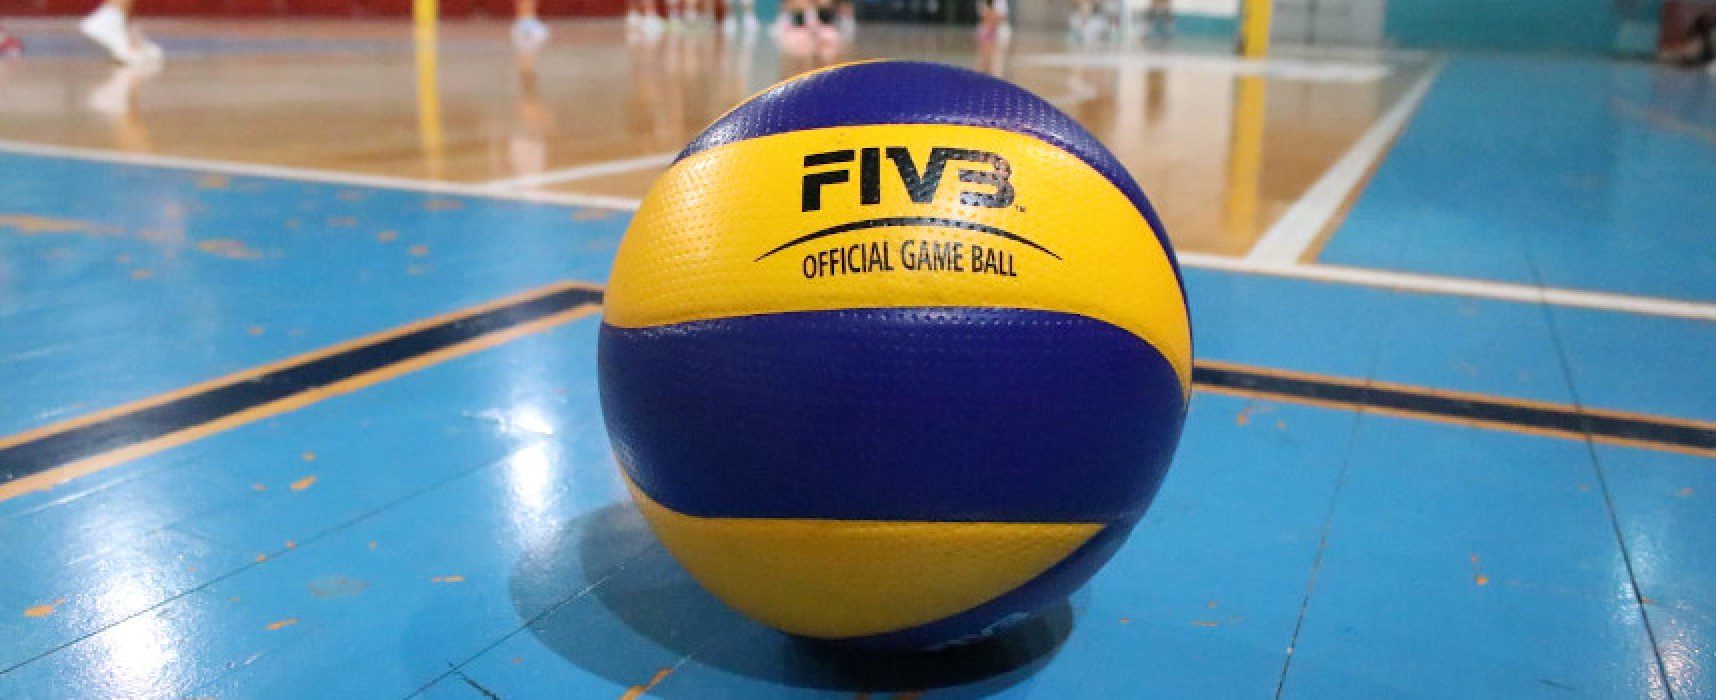 Star Volley Bisceglie, ufficializzato il calendario della prossima stagione